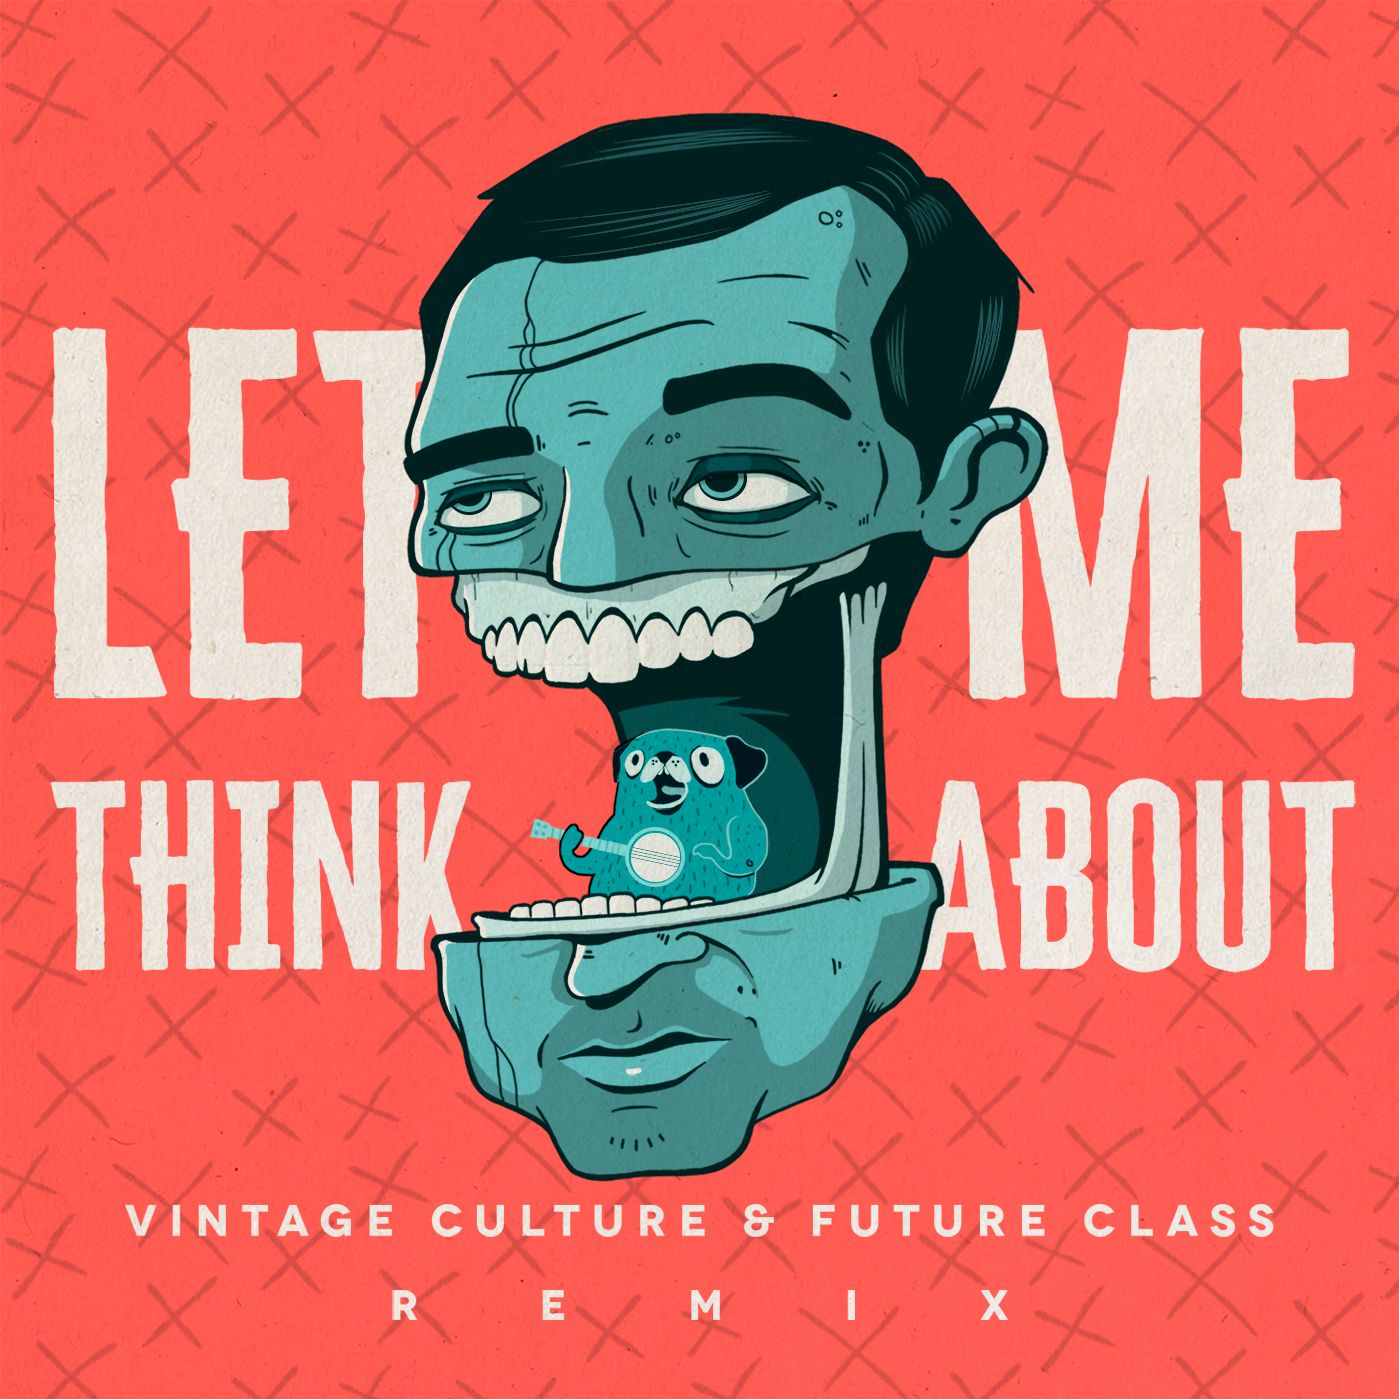 Pakua Vintage Culture & Future Class - Let Me Think About